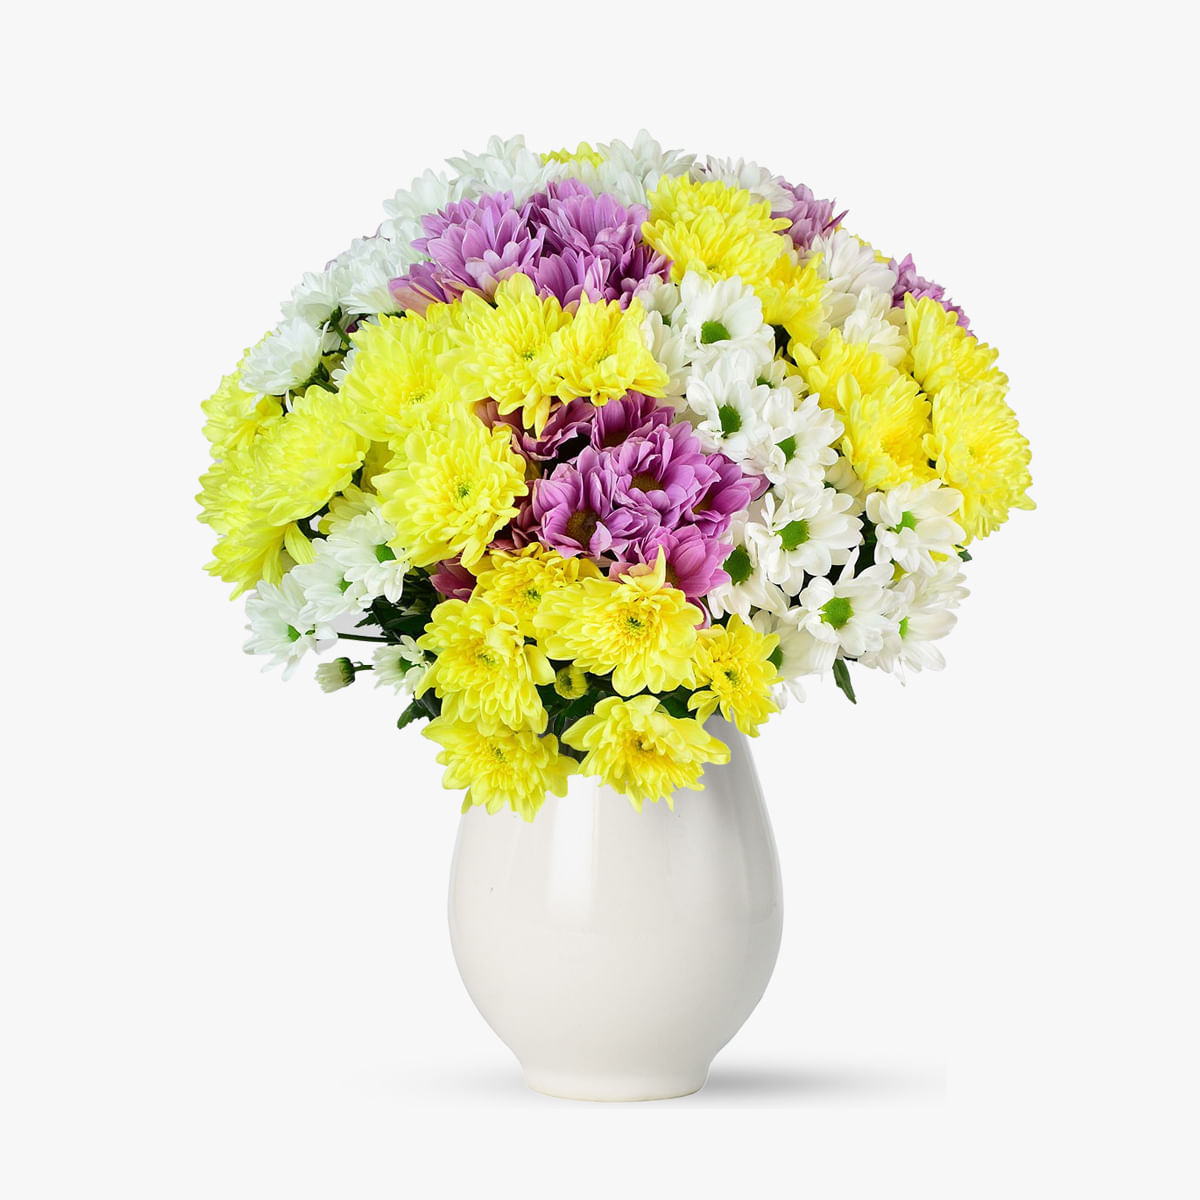 Buchet de 25 crizanteme multicolore – Standard Buchet